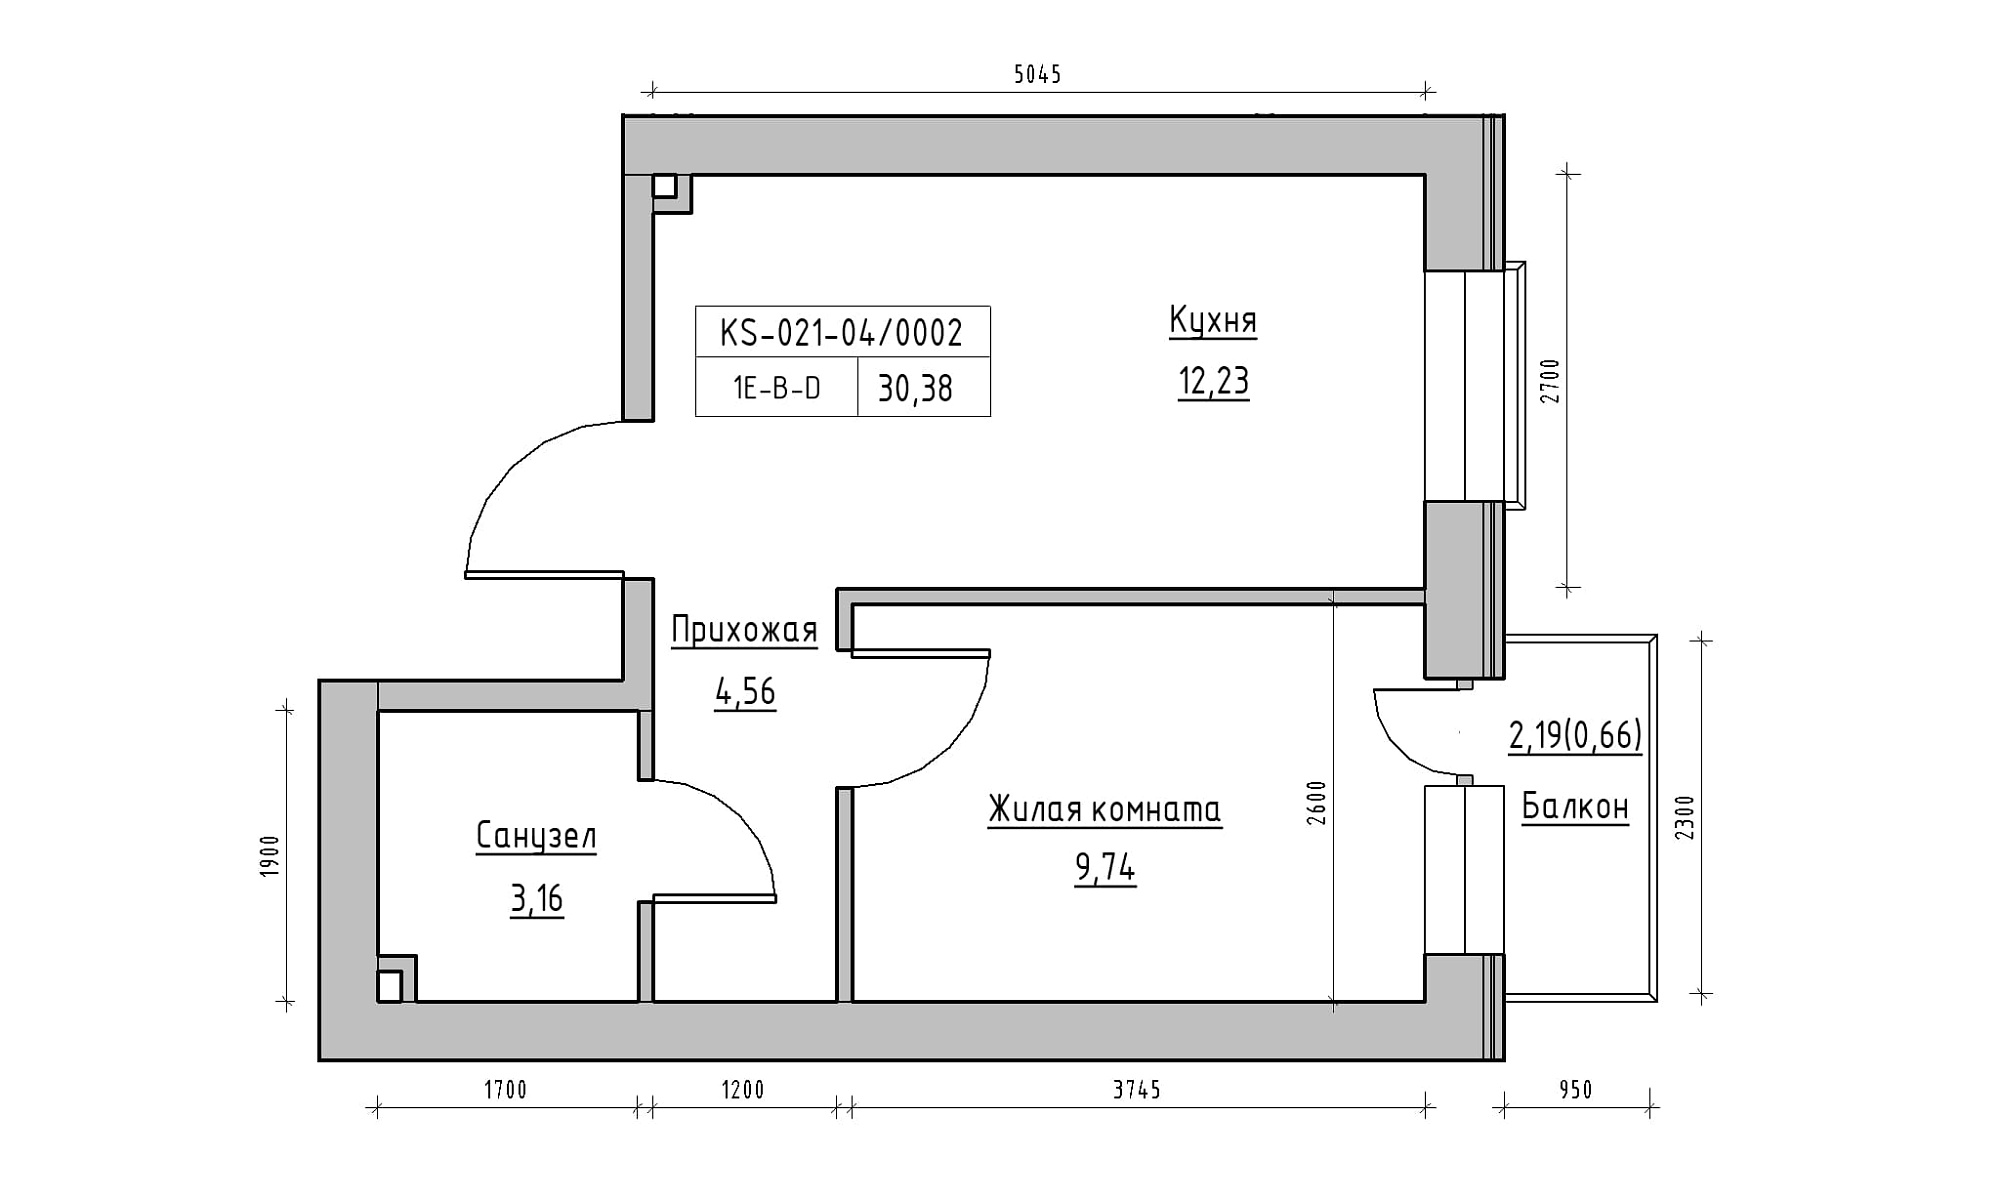 Планування 1-к квартира площею 30.38м2, KS-021-04/0002.